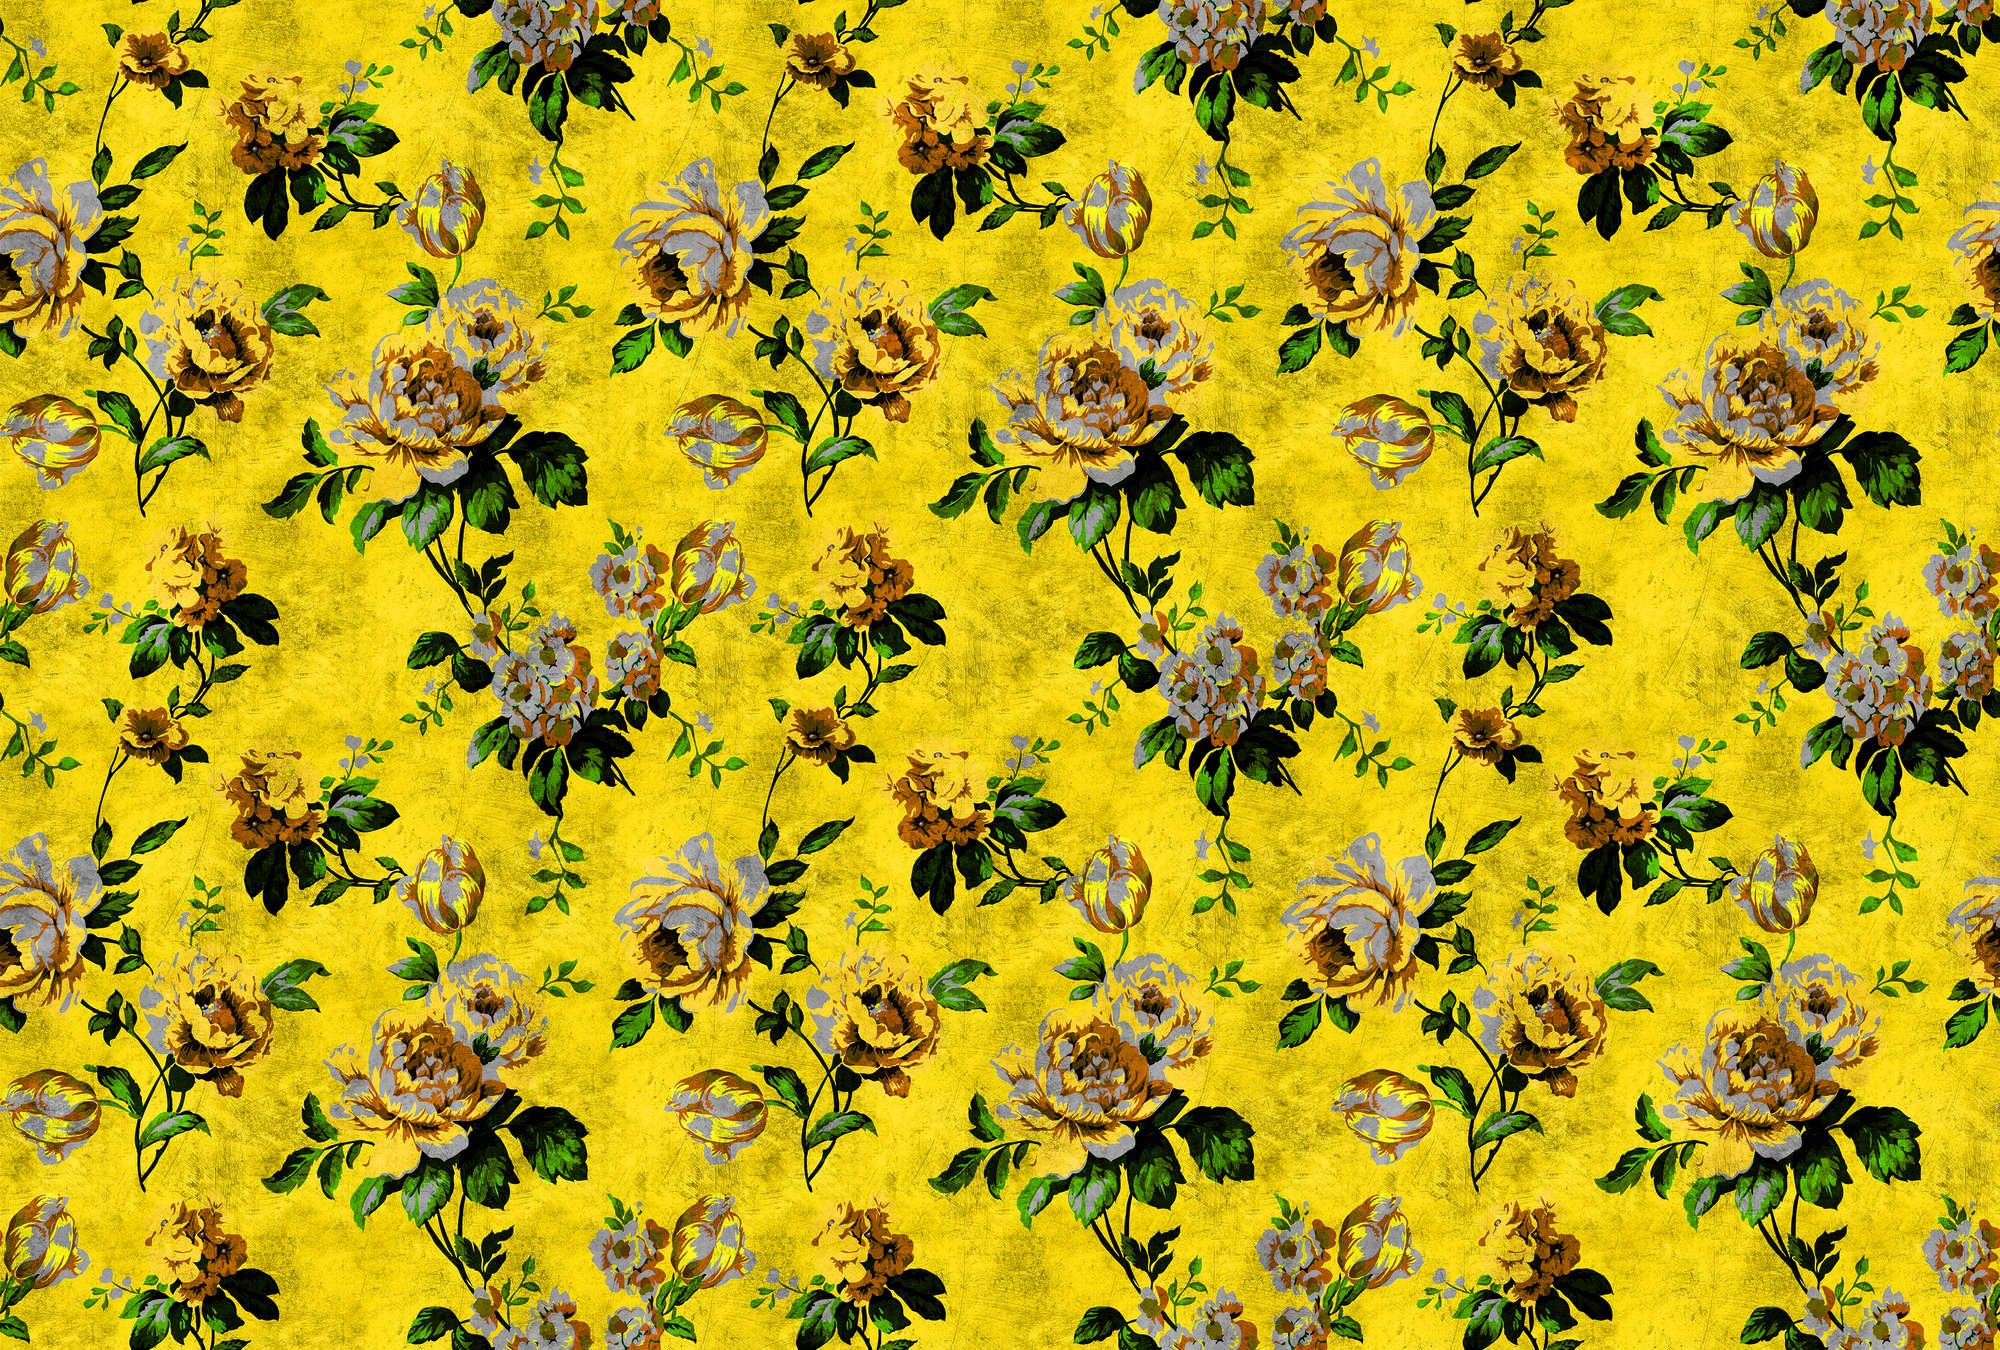             Wilde rozen 5 - Rozen fotobehang in krasstructuur in retro look, geel - geel, groen | parelmoer glad vlies
        